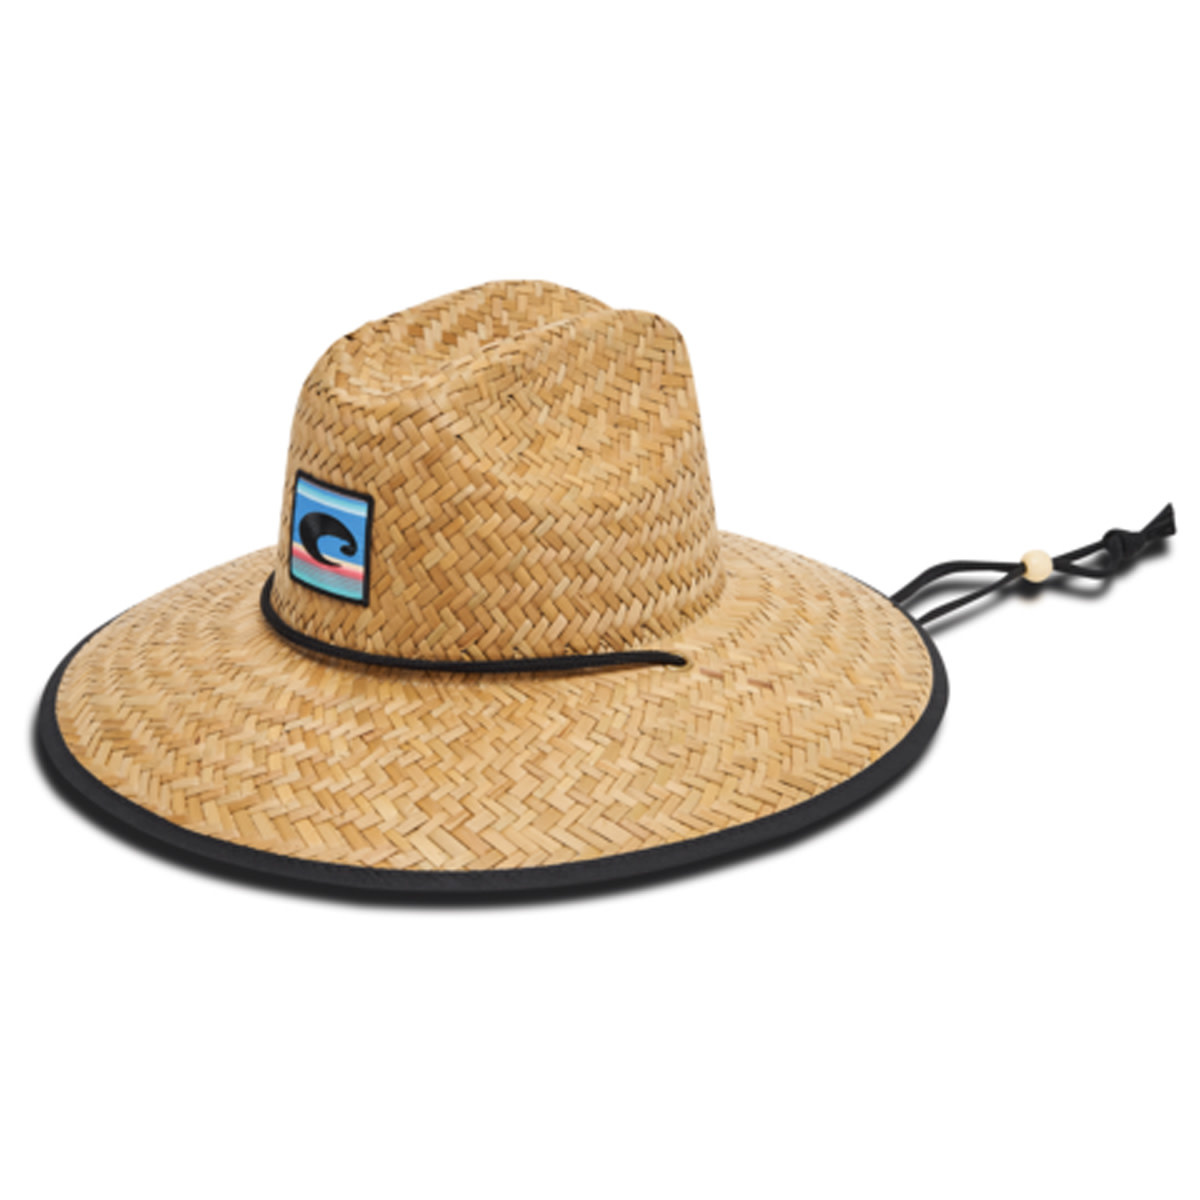 Costa del Mar Lifeguard Straw Hat Fiesta Prt - Florida Fishing